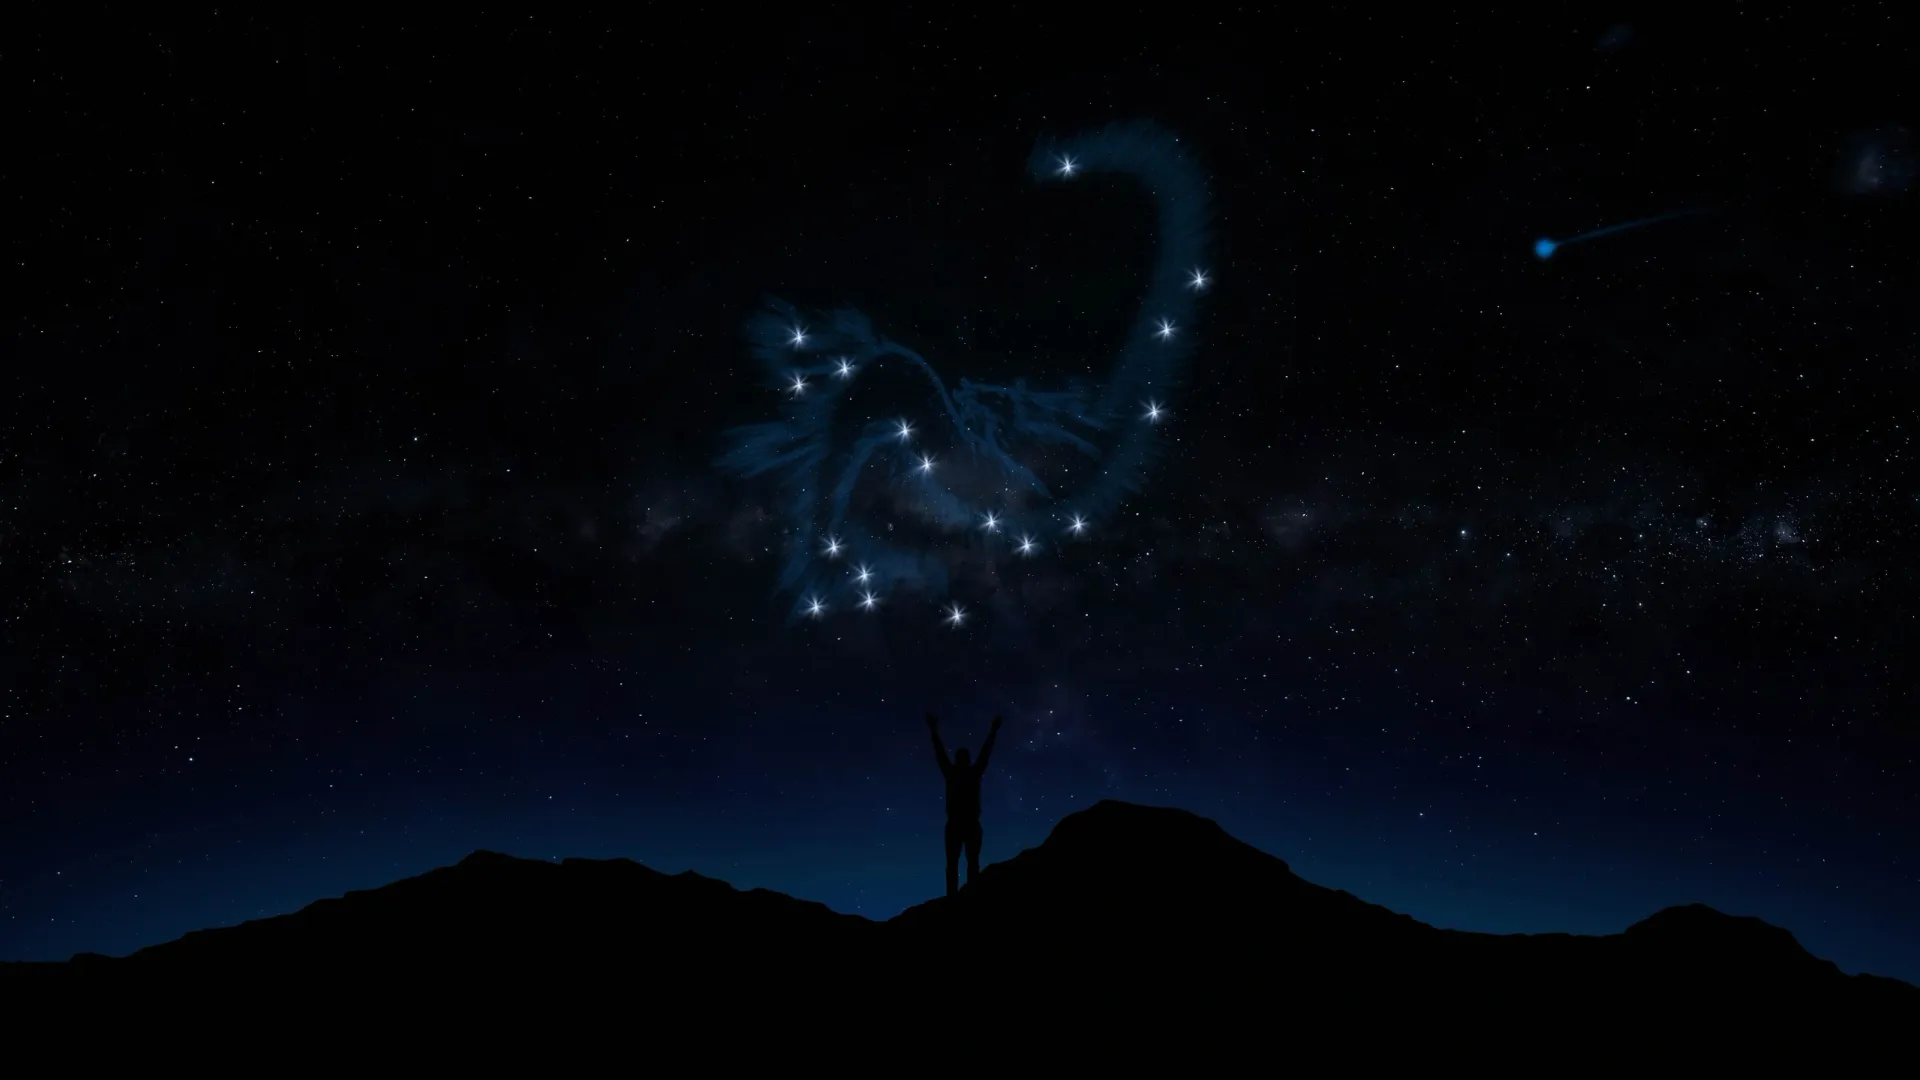 Дракон — околополярное созвездие, метеорный поток будет хорошо виден. Фото: SN VFX / Shutterstock / Fotodom